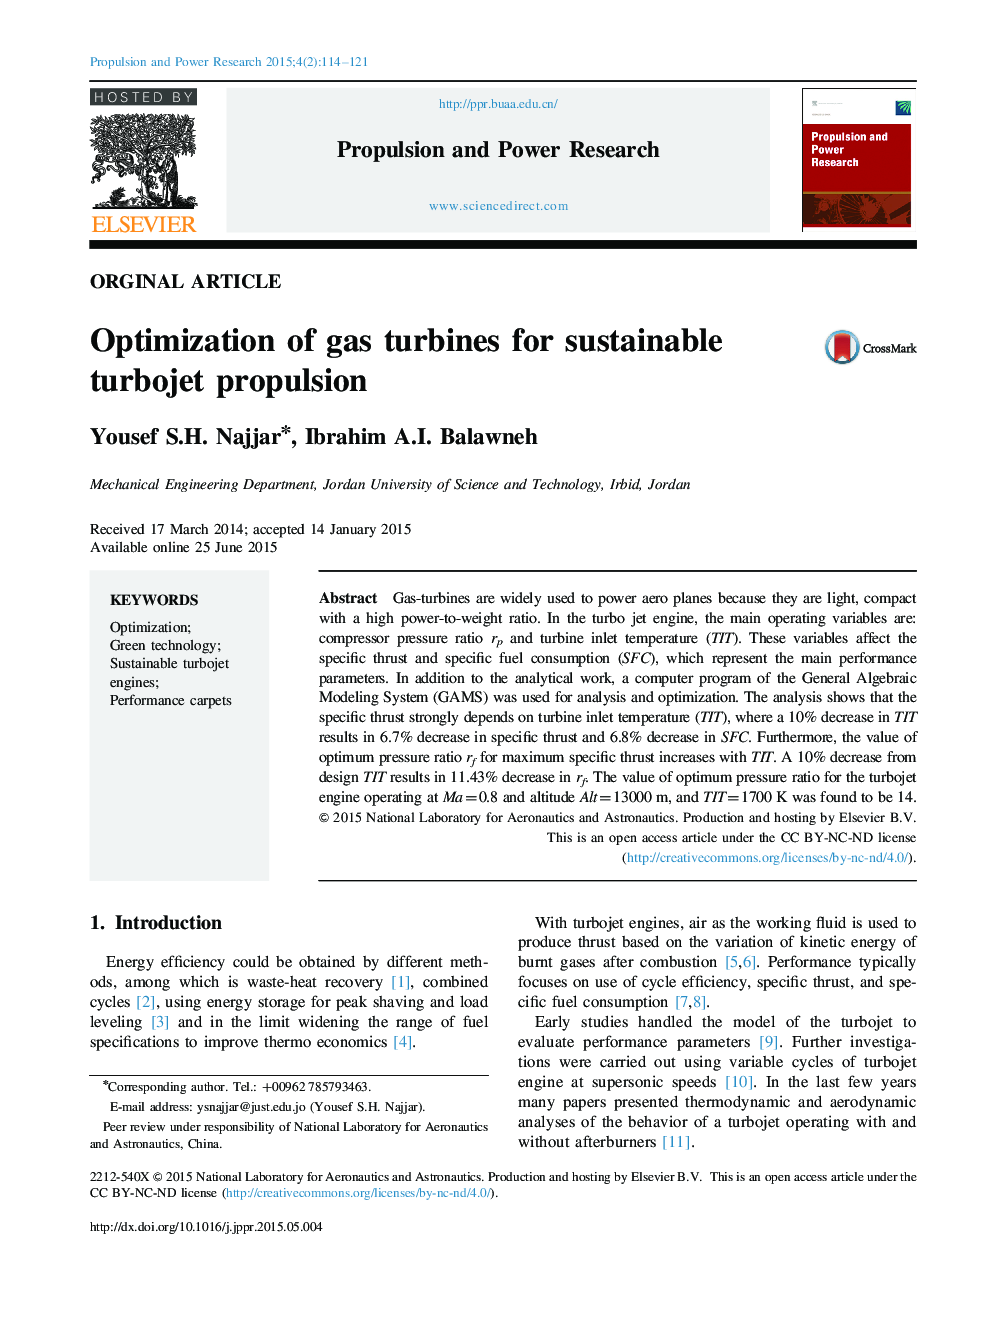 بهینه سازی توربین های گاز برای موتورهای توربوجت پایدار 